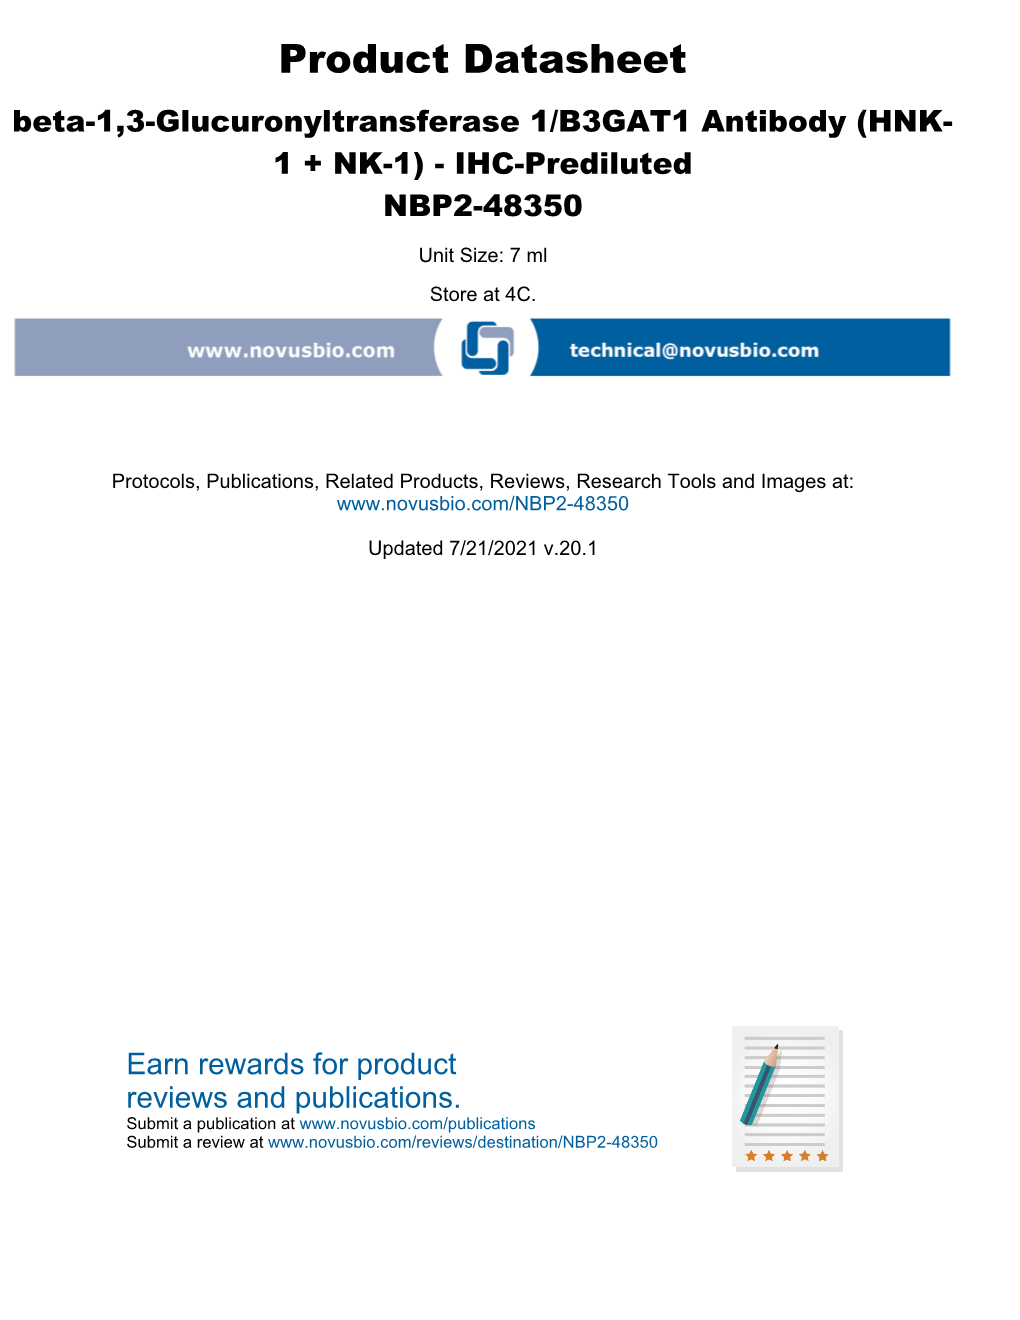 IHC-Prediluted NBP2-48350